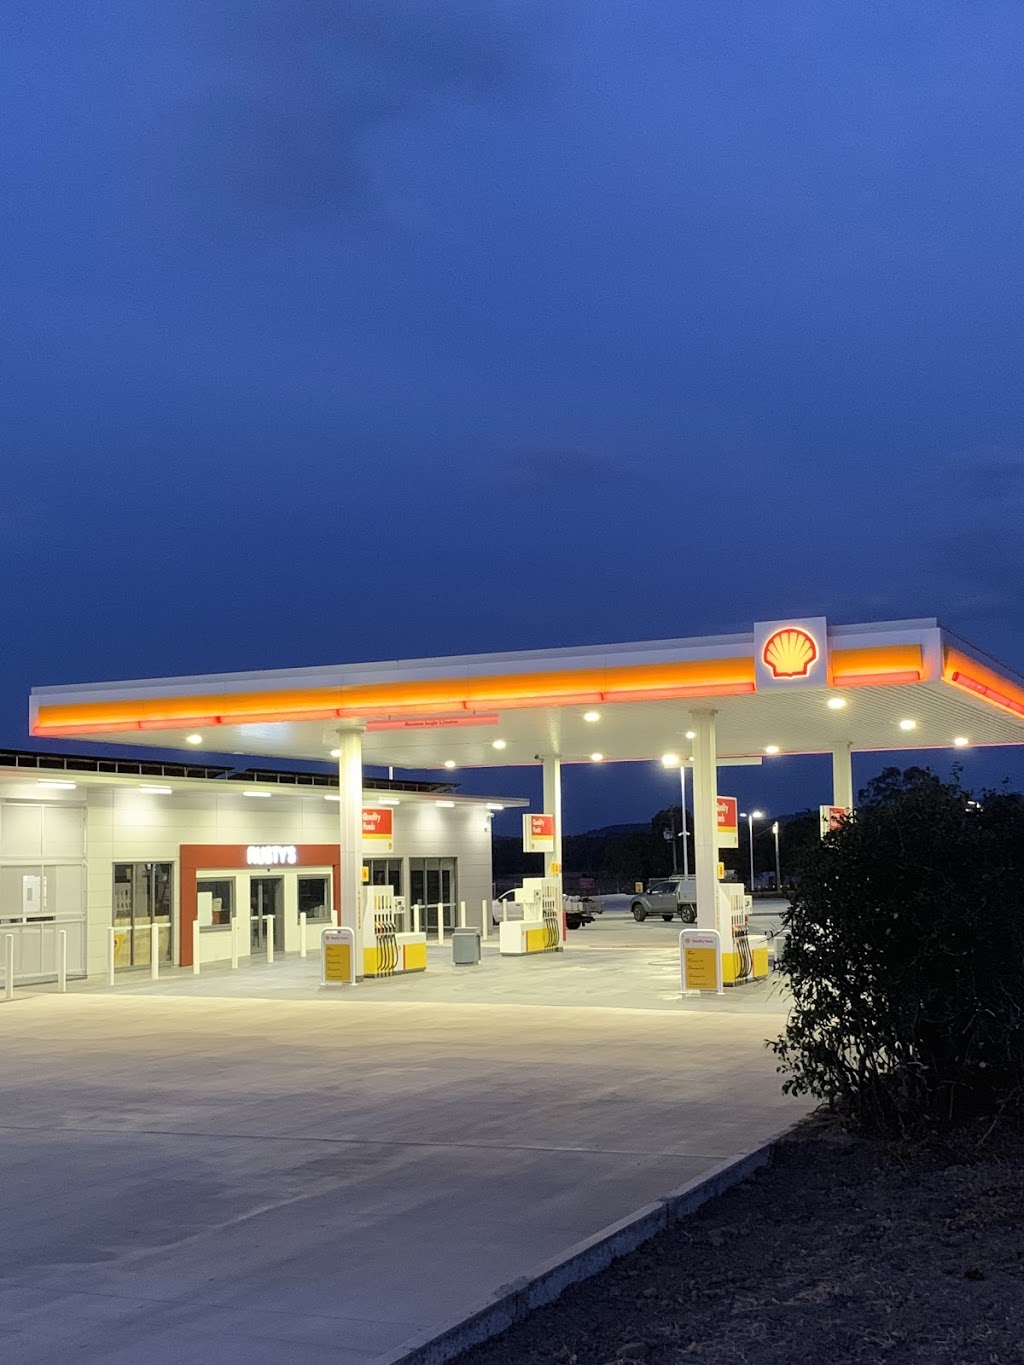 Shell Rusty’s | gas station | 4114 Warrego Hwy, Hatton Vale QLD 4341, Australia | 0754657279 OR +61 7 5465 7279